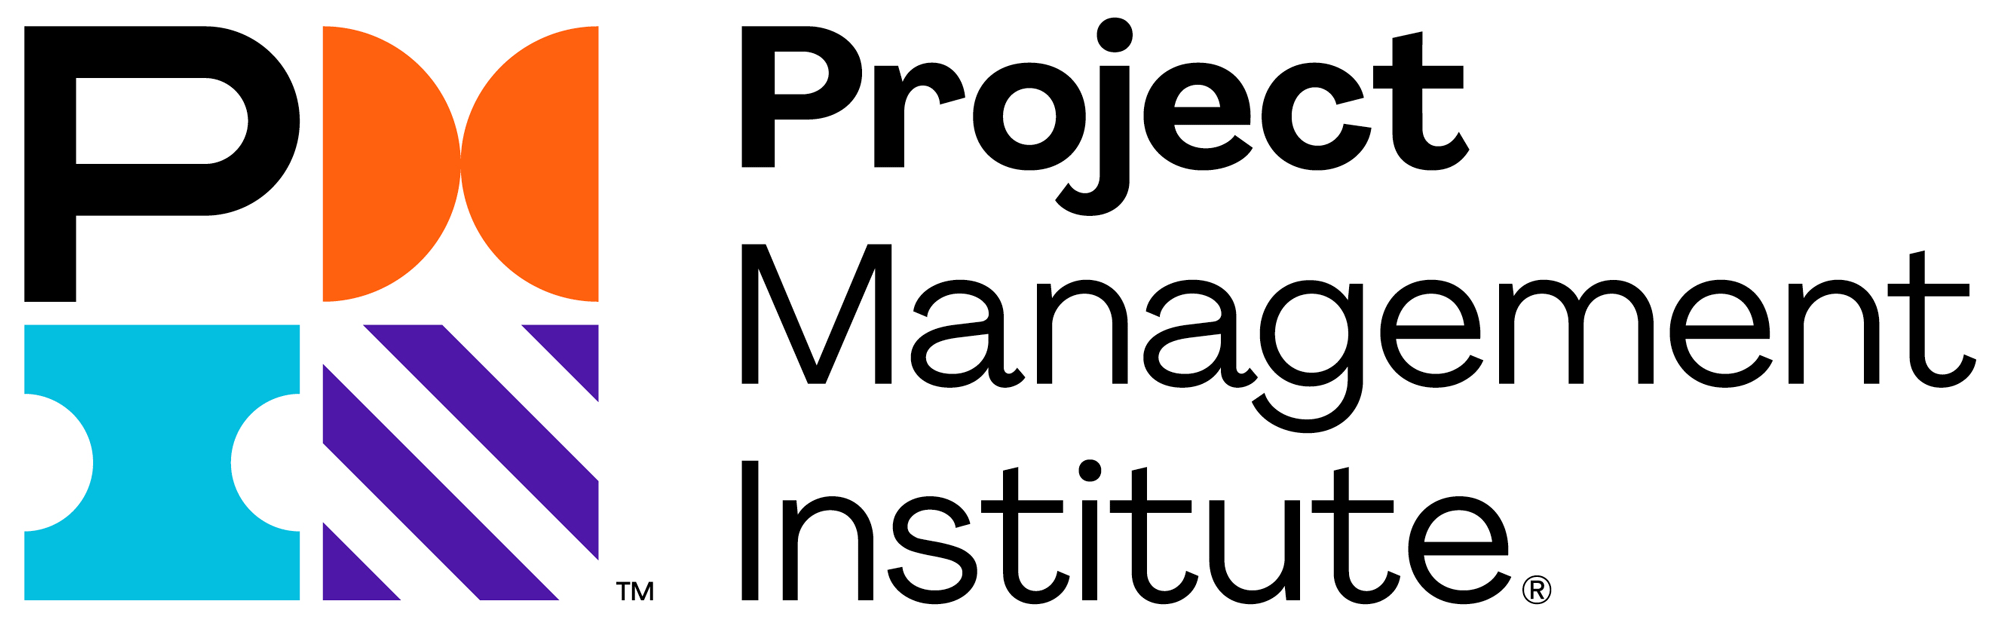 Pmi Logo 2020 